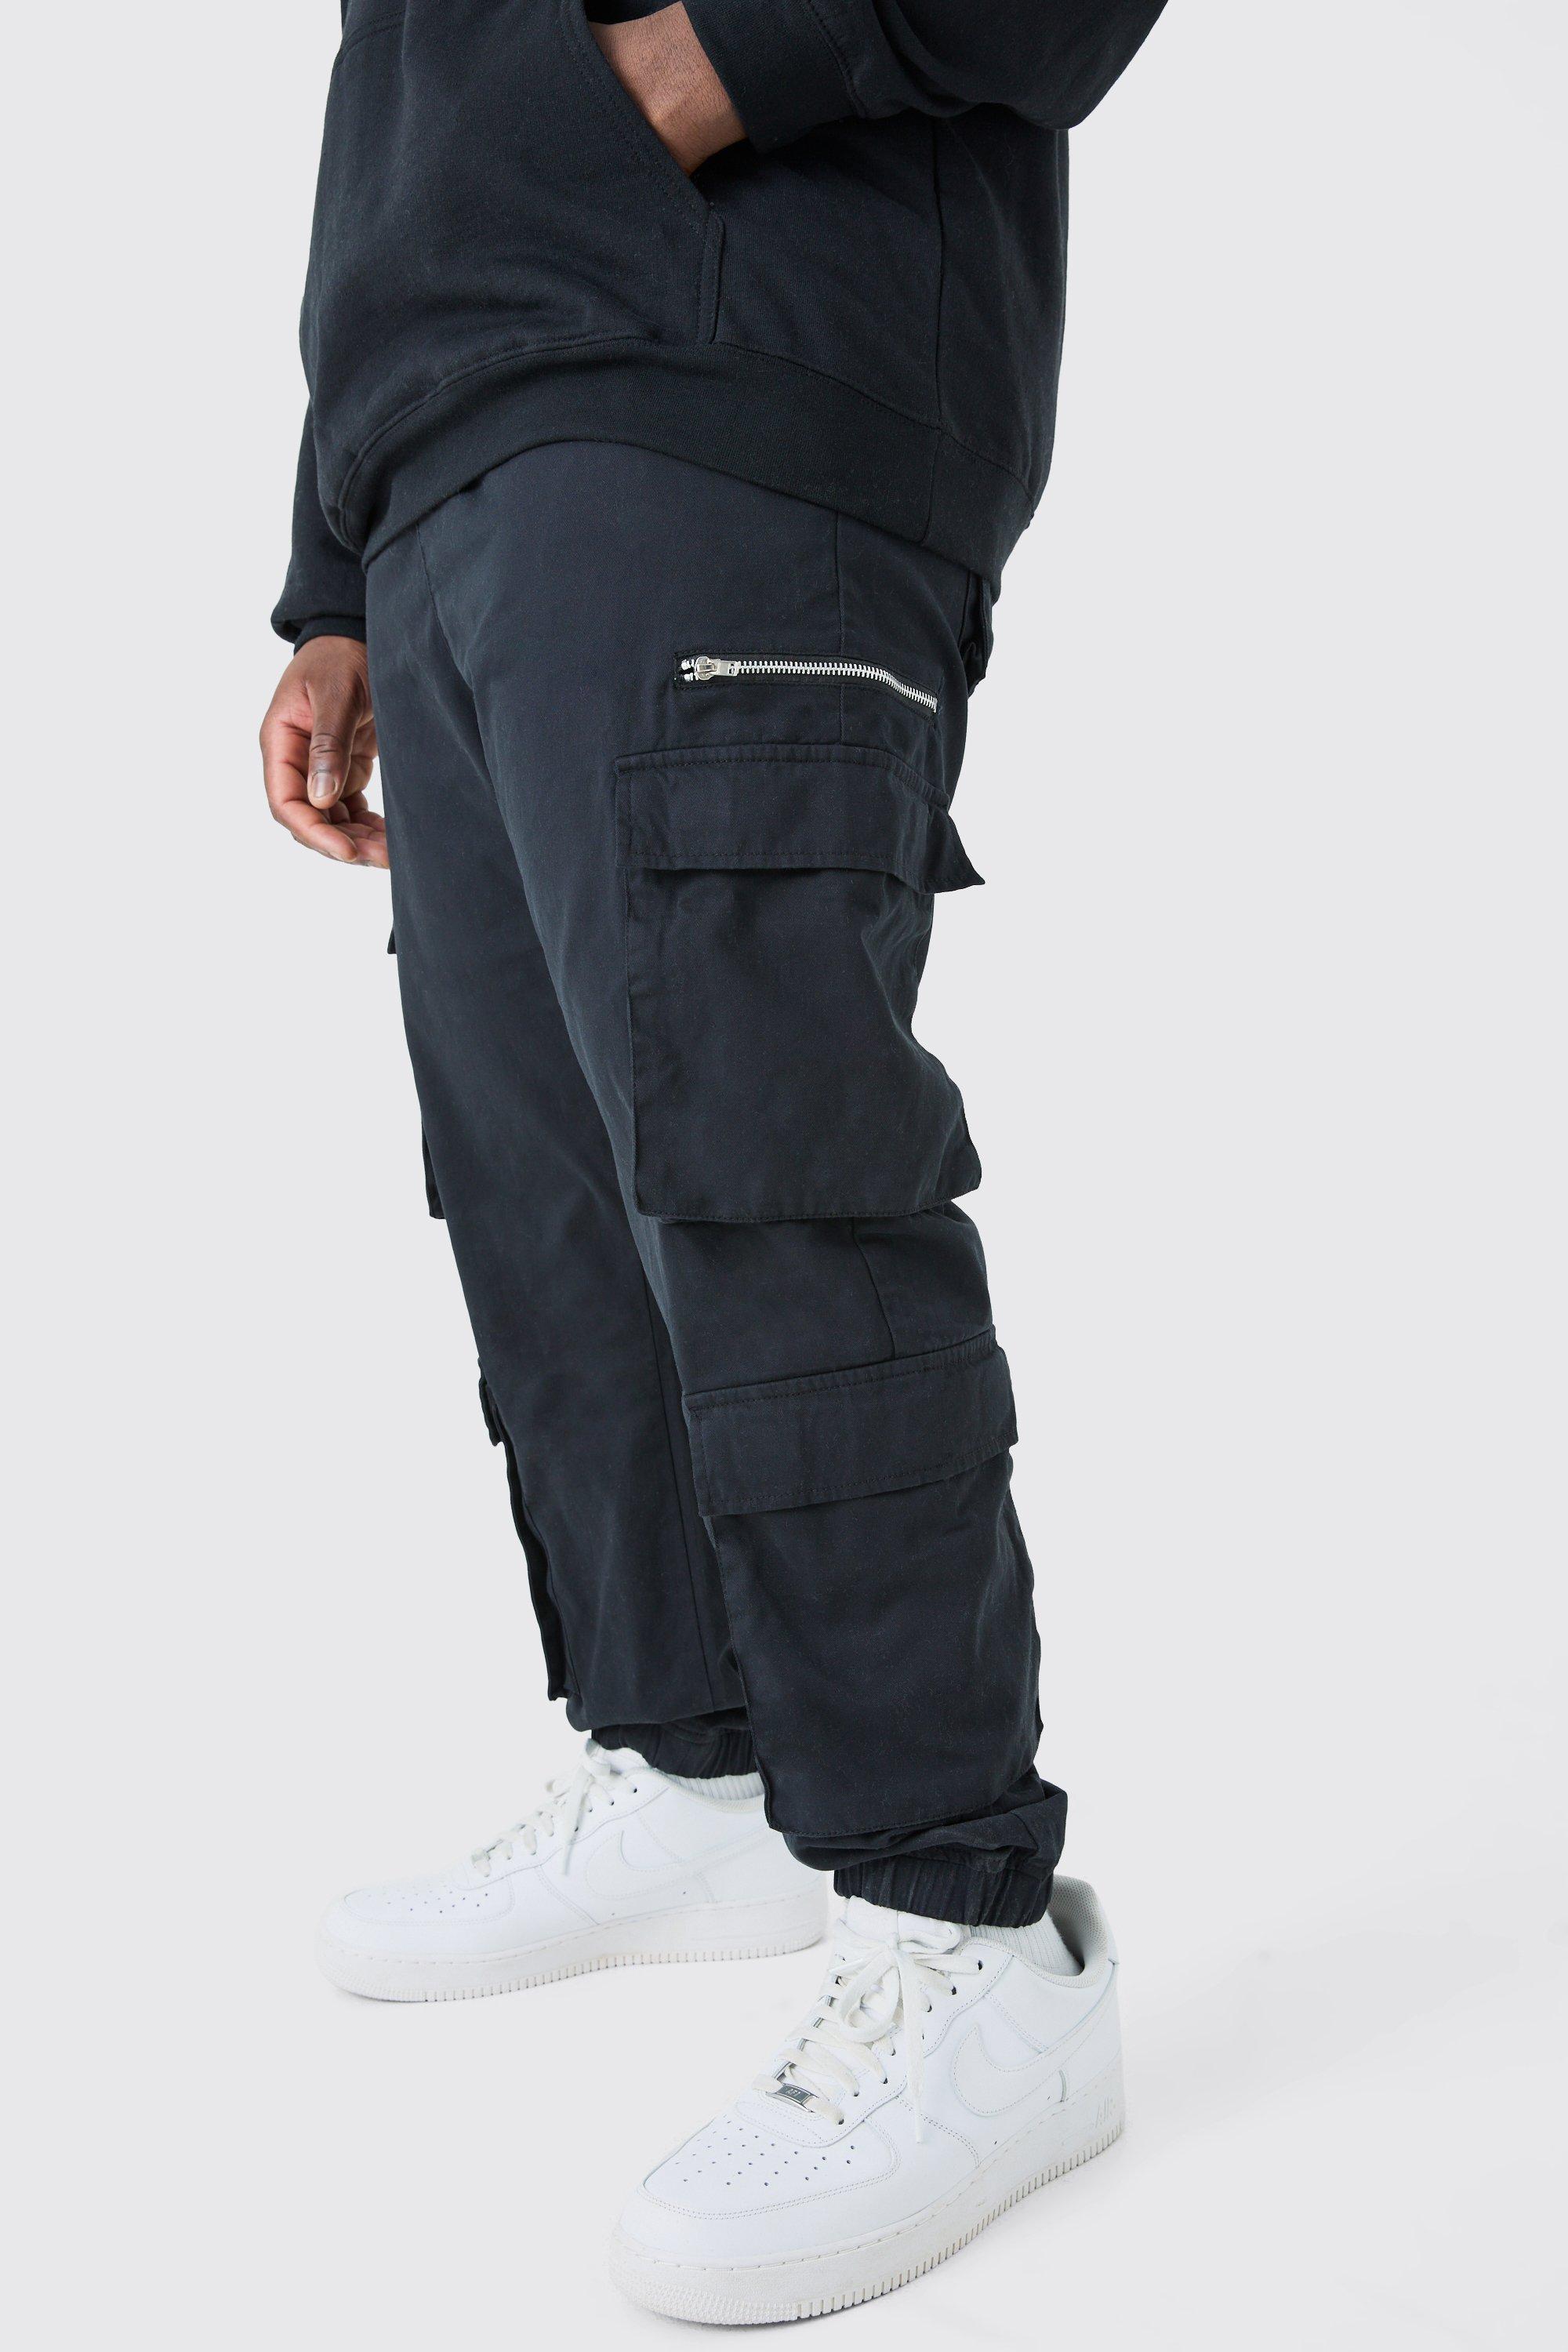 Image of Pantaloni Cargo Plus Size Slim Fit con laccetti lunghi, Nero